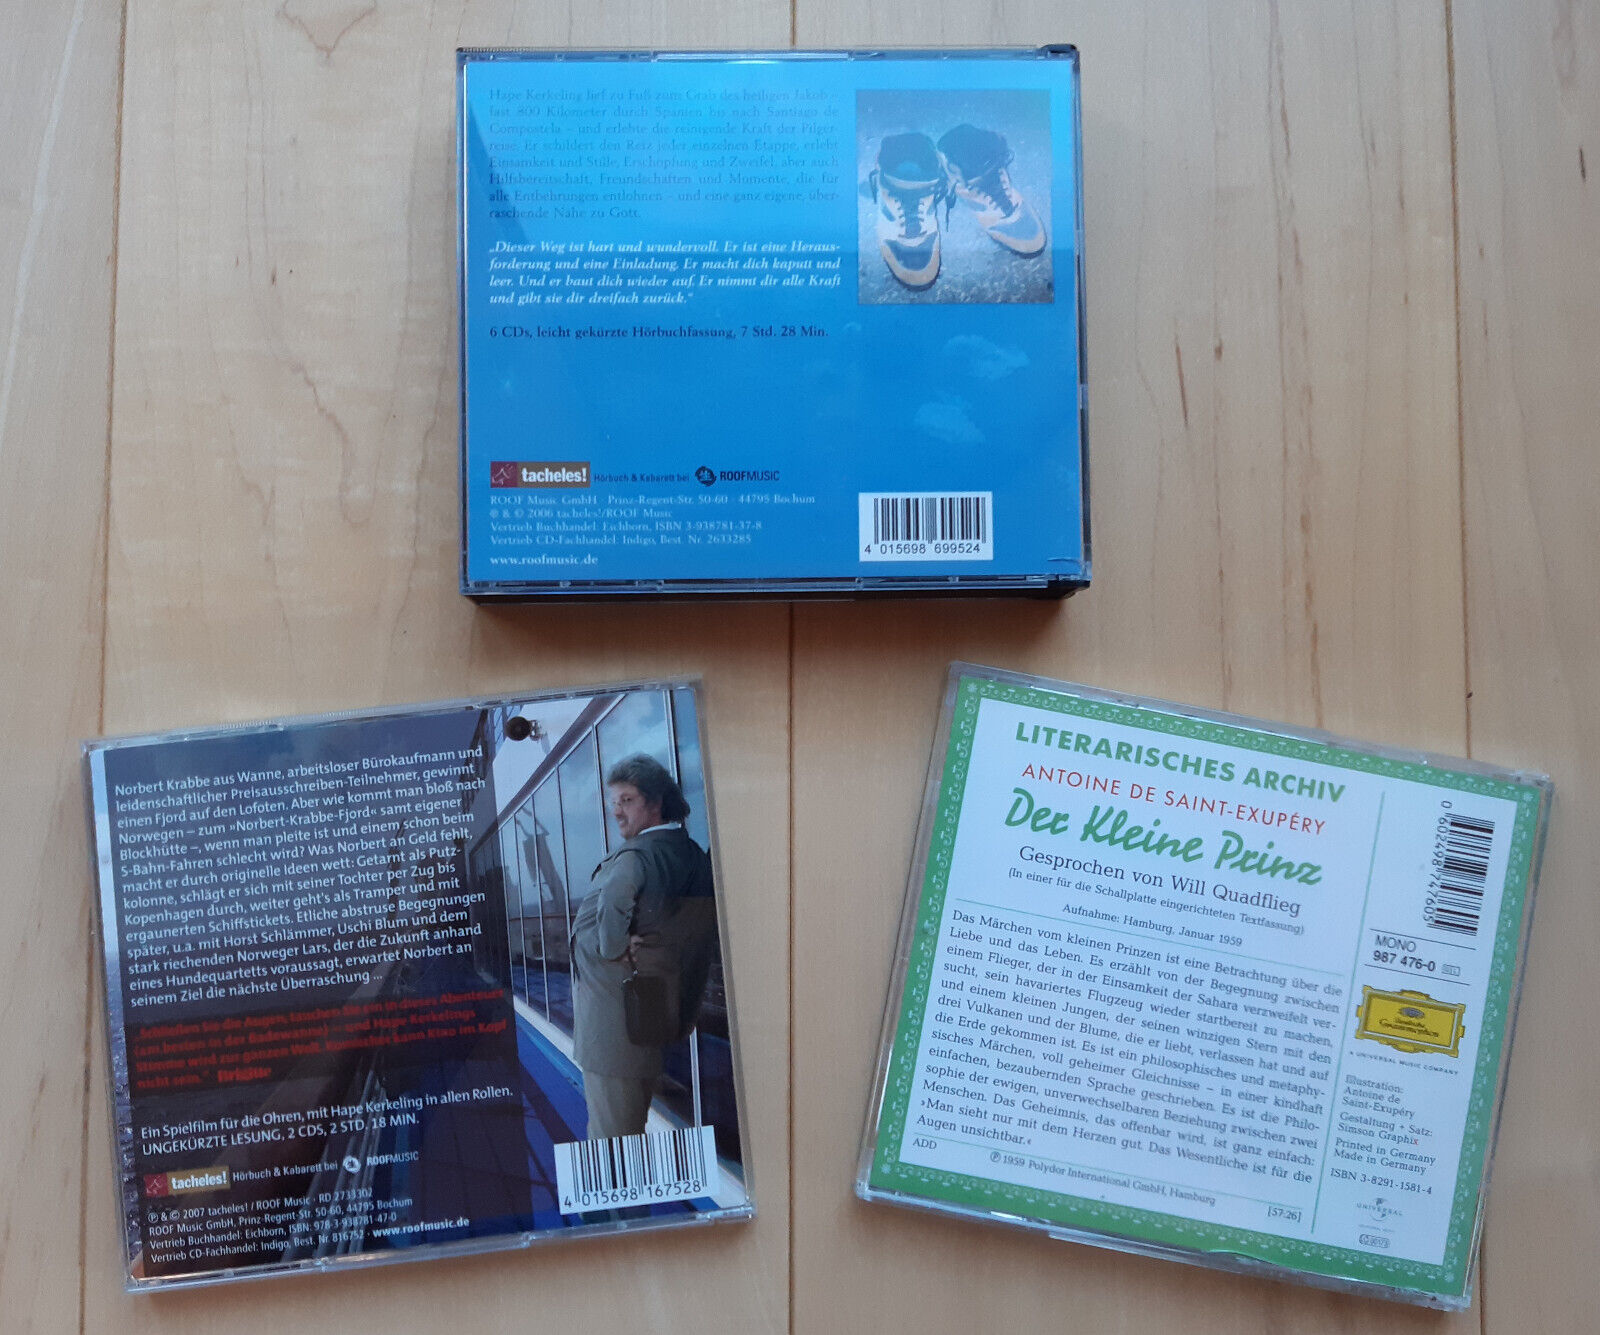 3x Hörbuch auf CD (2x Hape Kerkeling, 1x Der kleine Prinz)